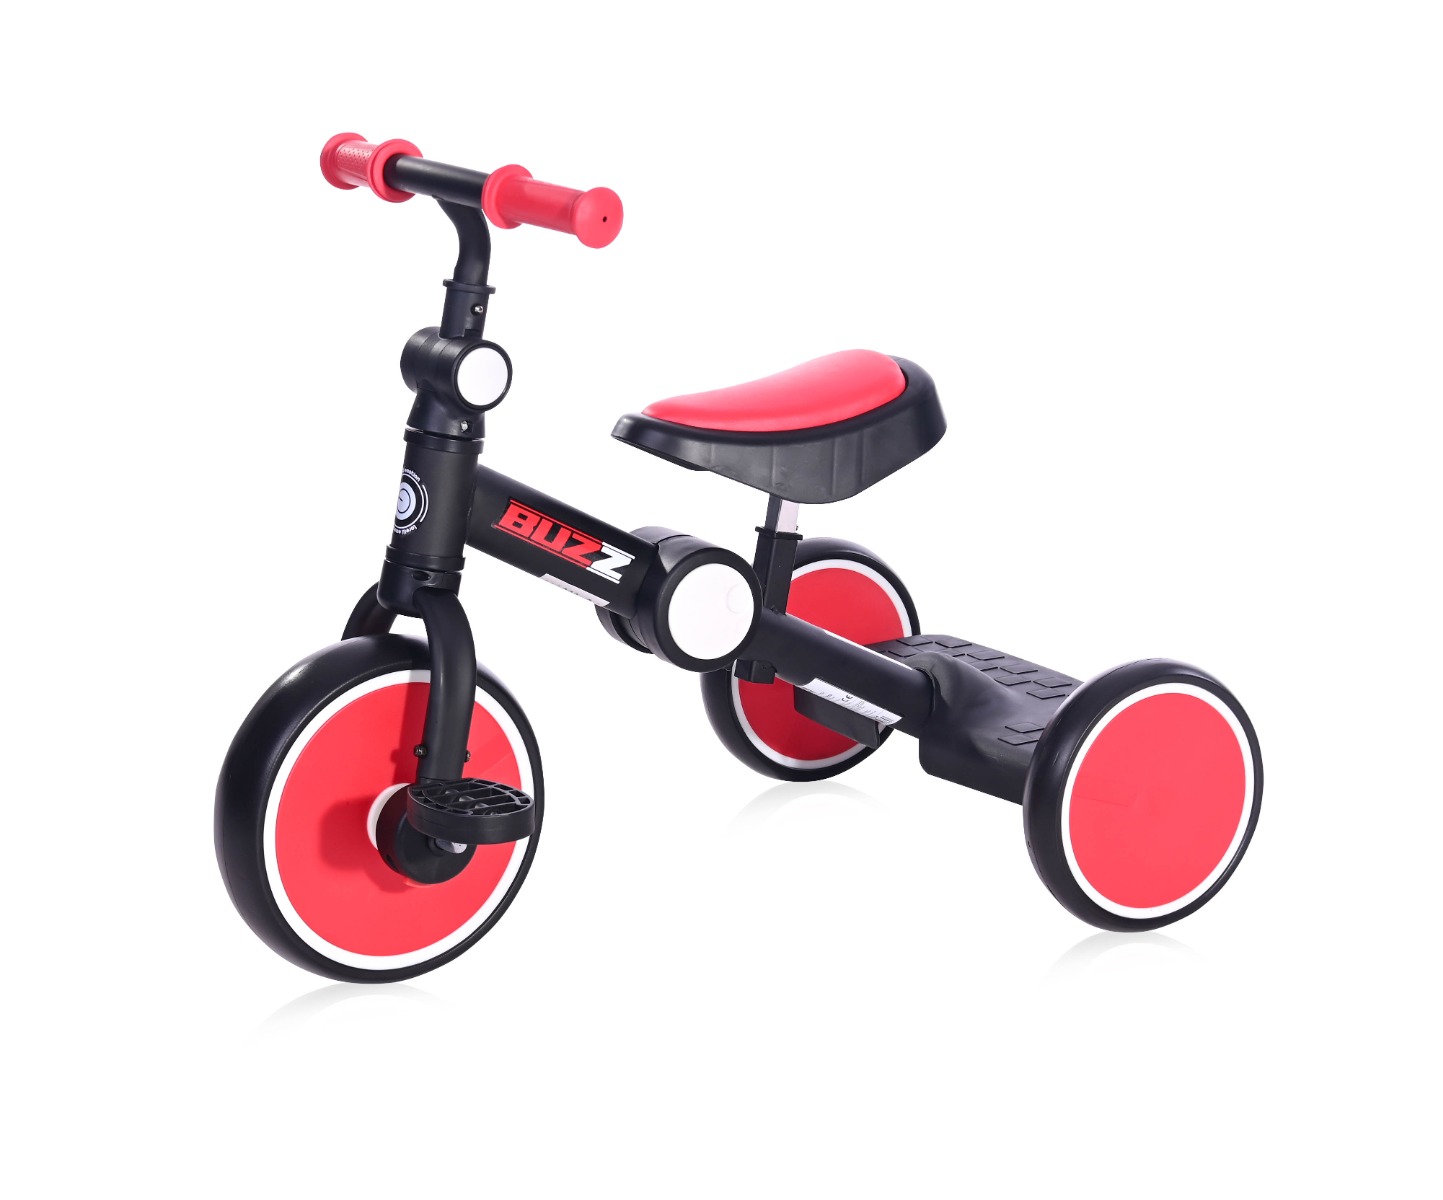 Tricicleta pentru copii, complet pliabila, Lorelli Buzz, Black Red La Plimbare 2023-09-26